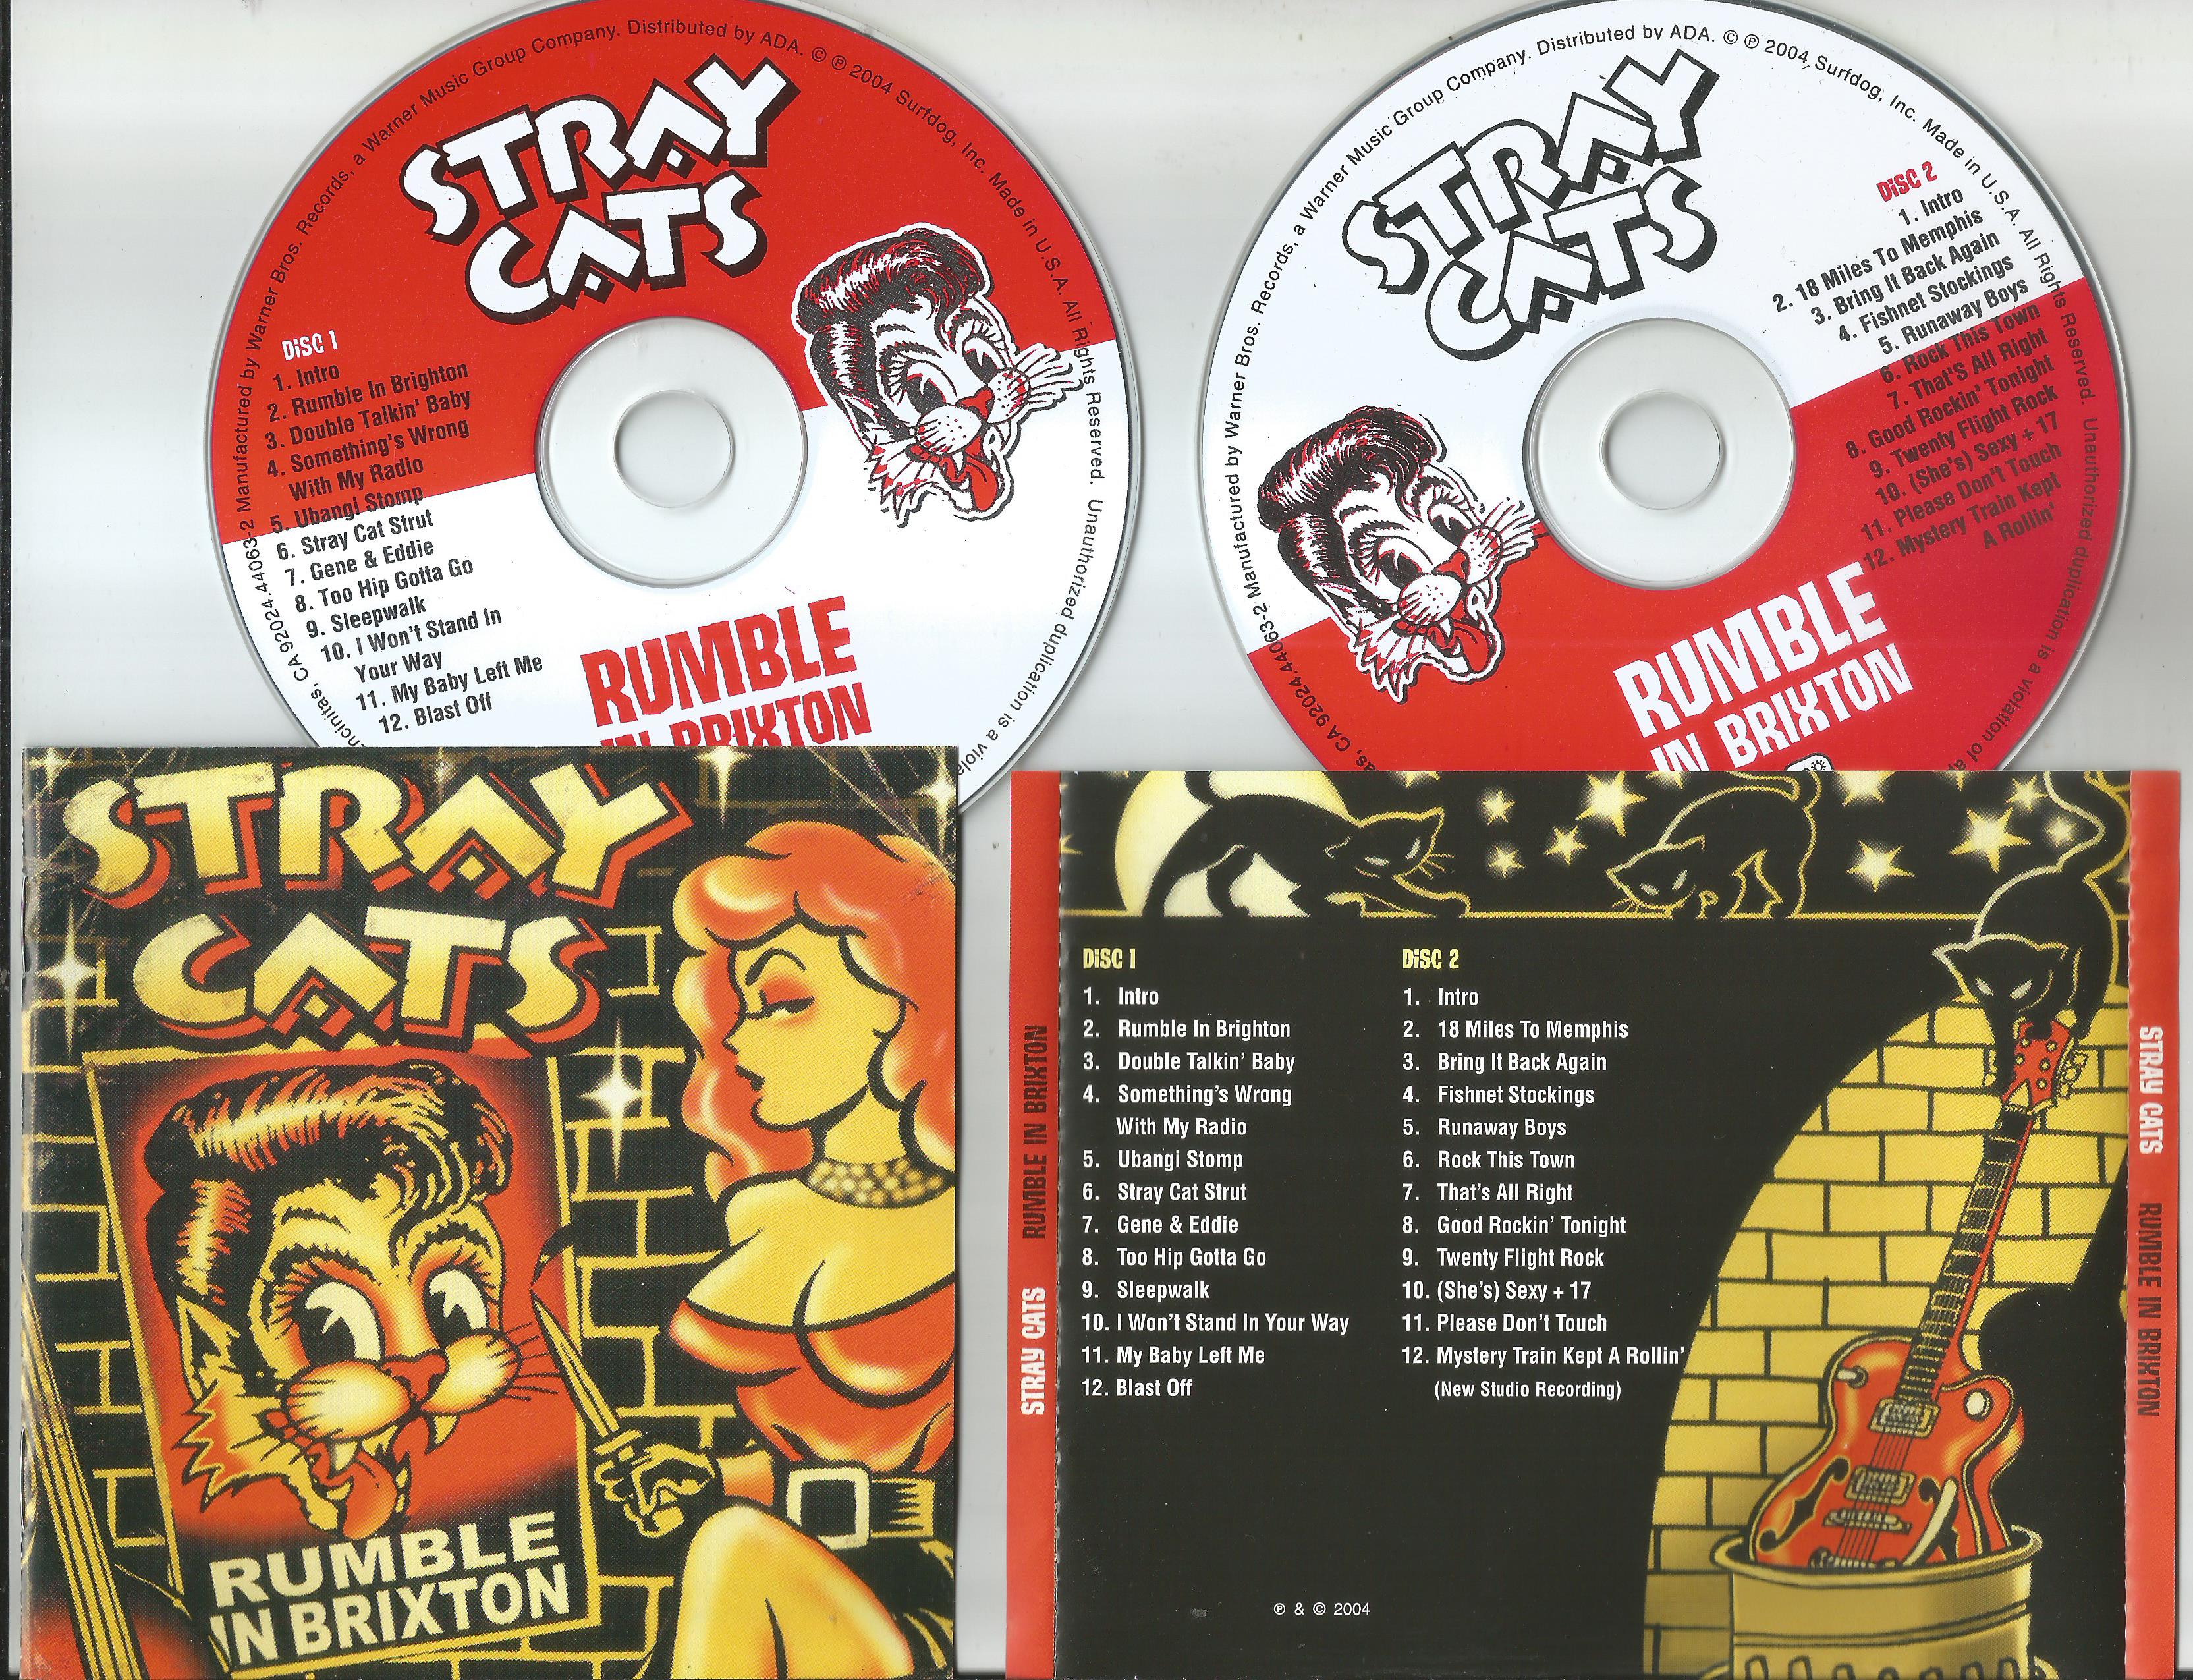 Stray cats ubangi stomp. Stray Cats\Blast off. Stray Cats фото. Stray Cats игра параметры. Stray Cats - the very best of [2003].